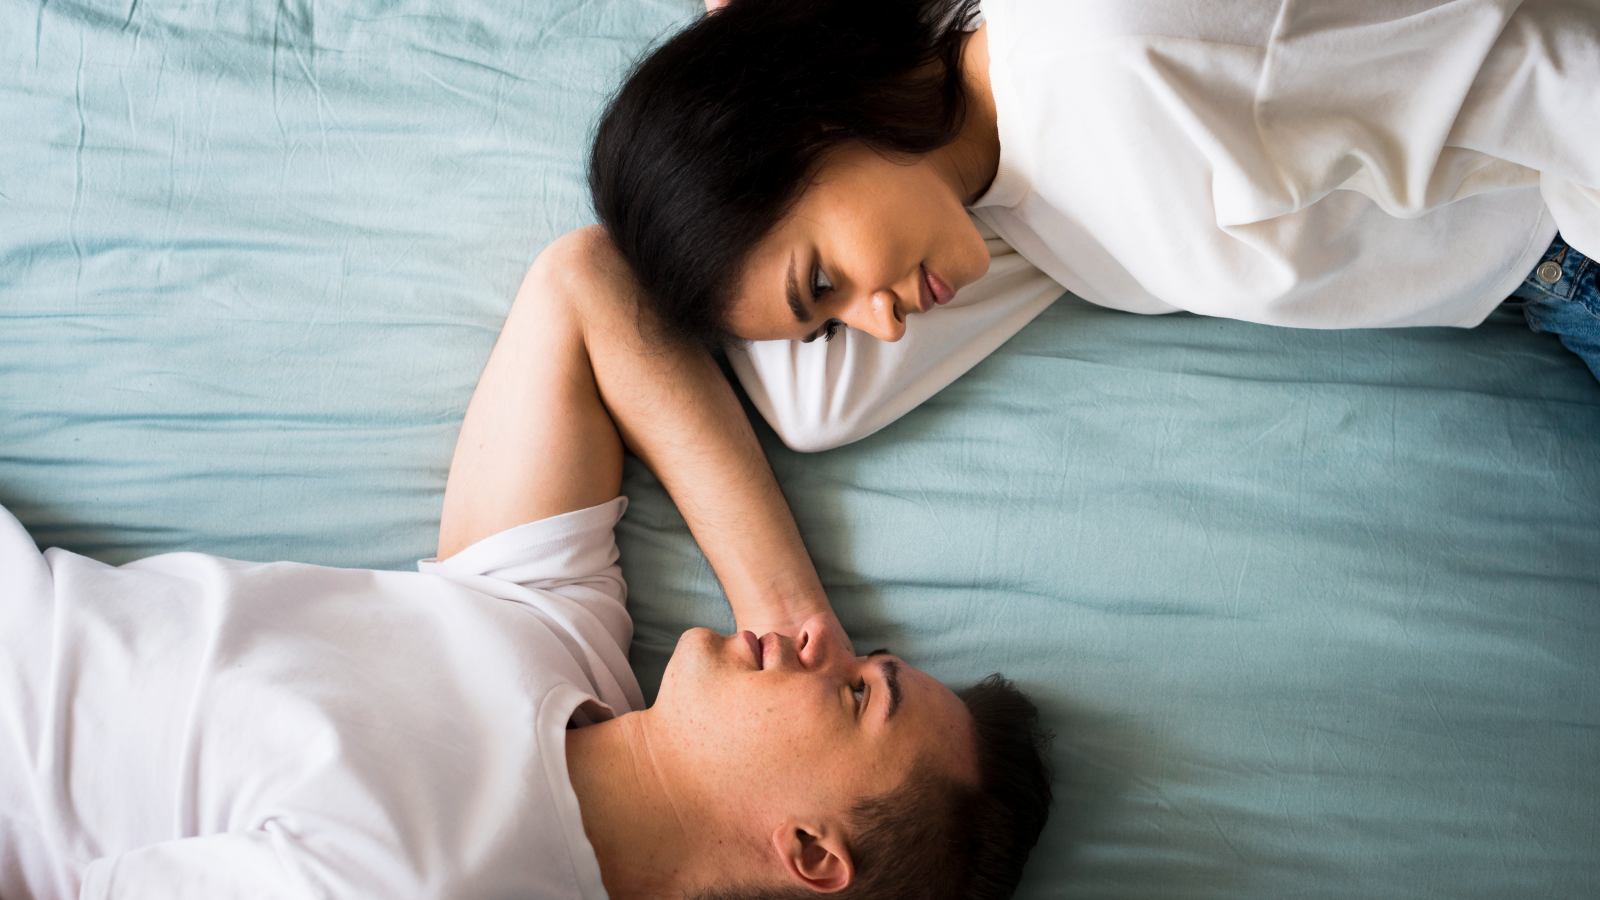 6 tips to enjoy sex despite a tiring day